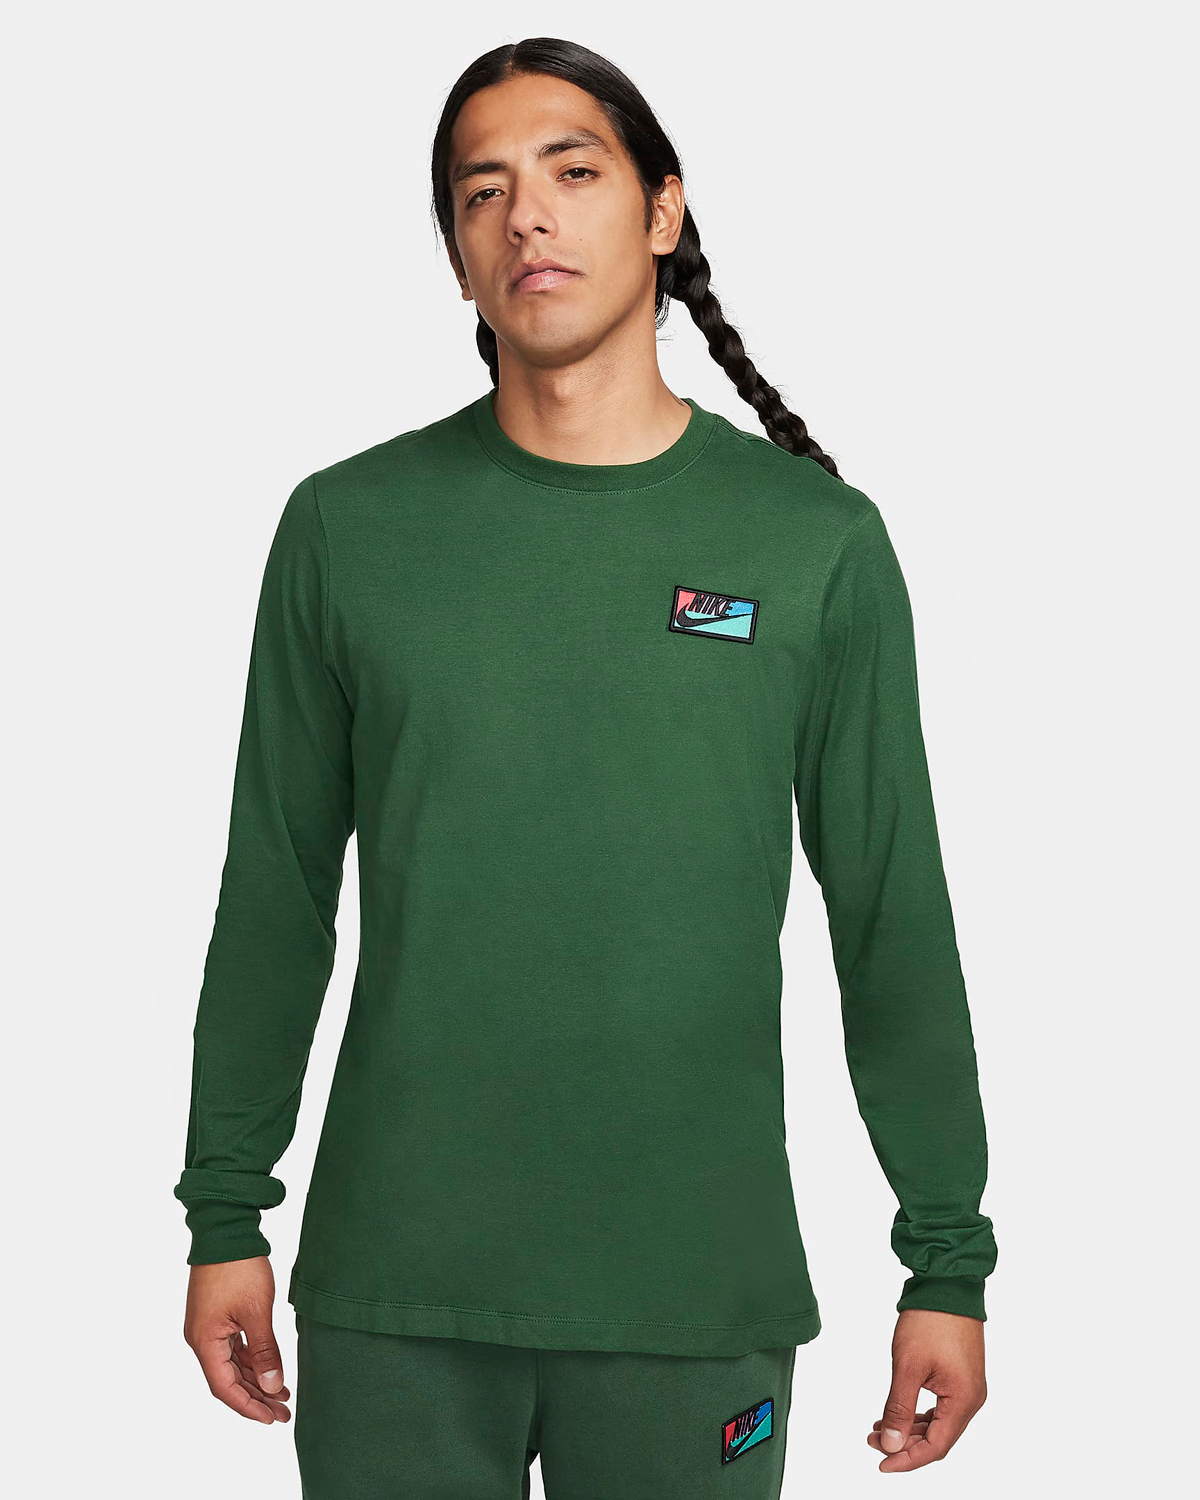 Nike-Sportswear-Patch-Long-Sleeve-T-Shirt-Fir-Green